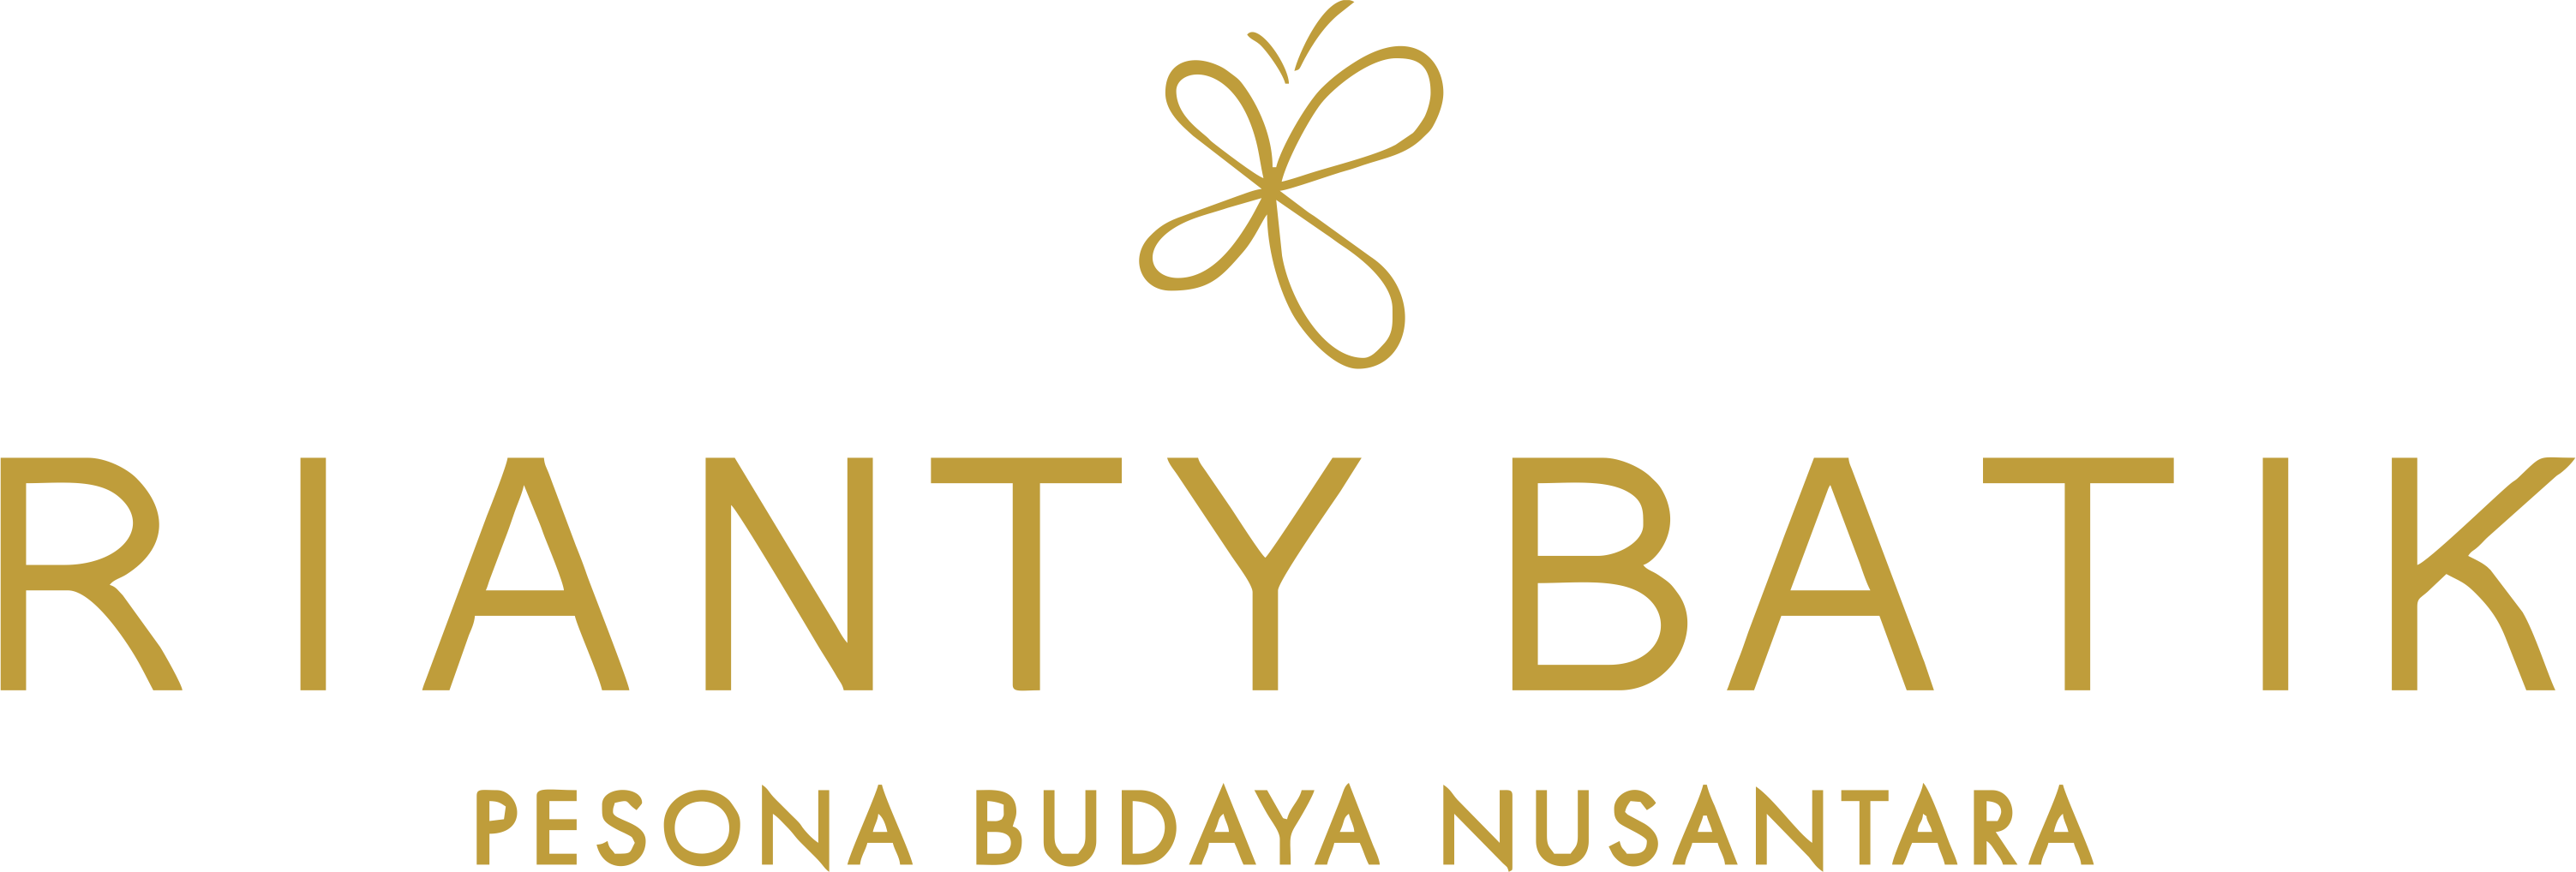 Rianty Batik | Toko Online Batik Yogyakarta, Oleh-Oleh, dan Kerajinan Khas Yogyakarta